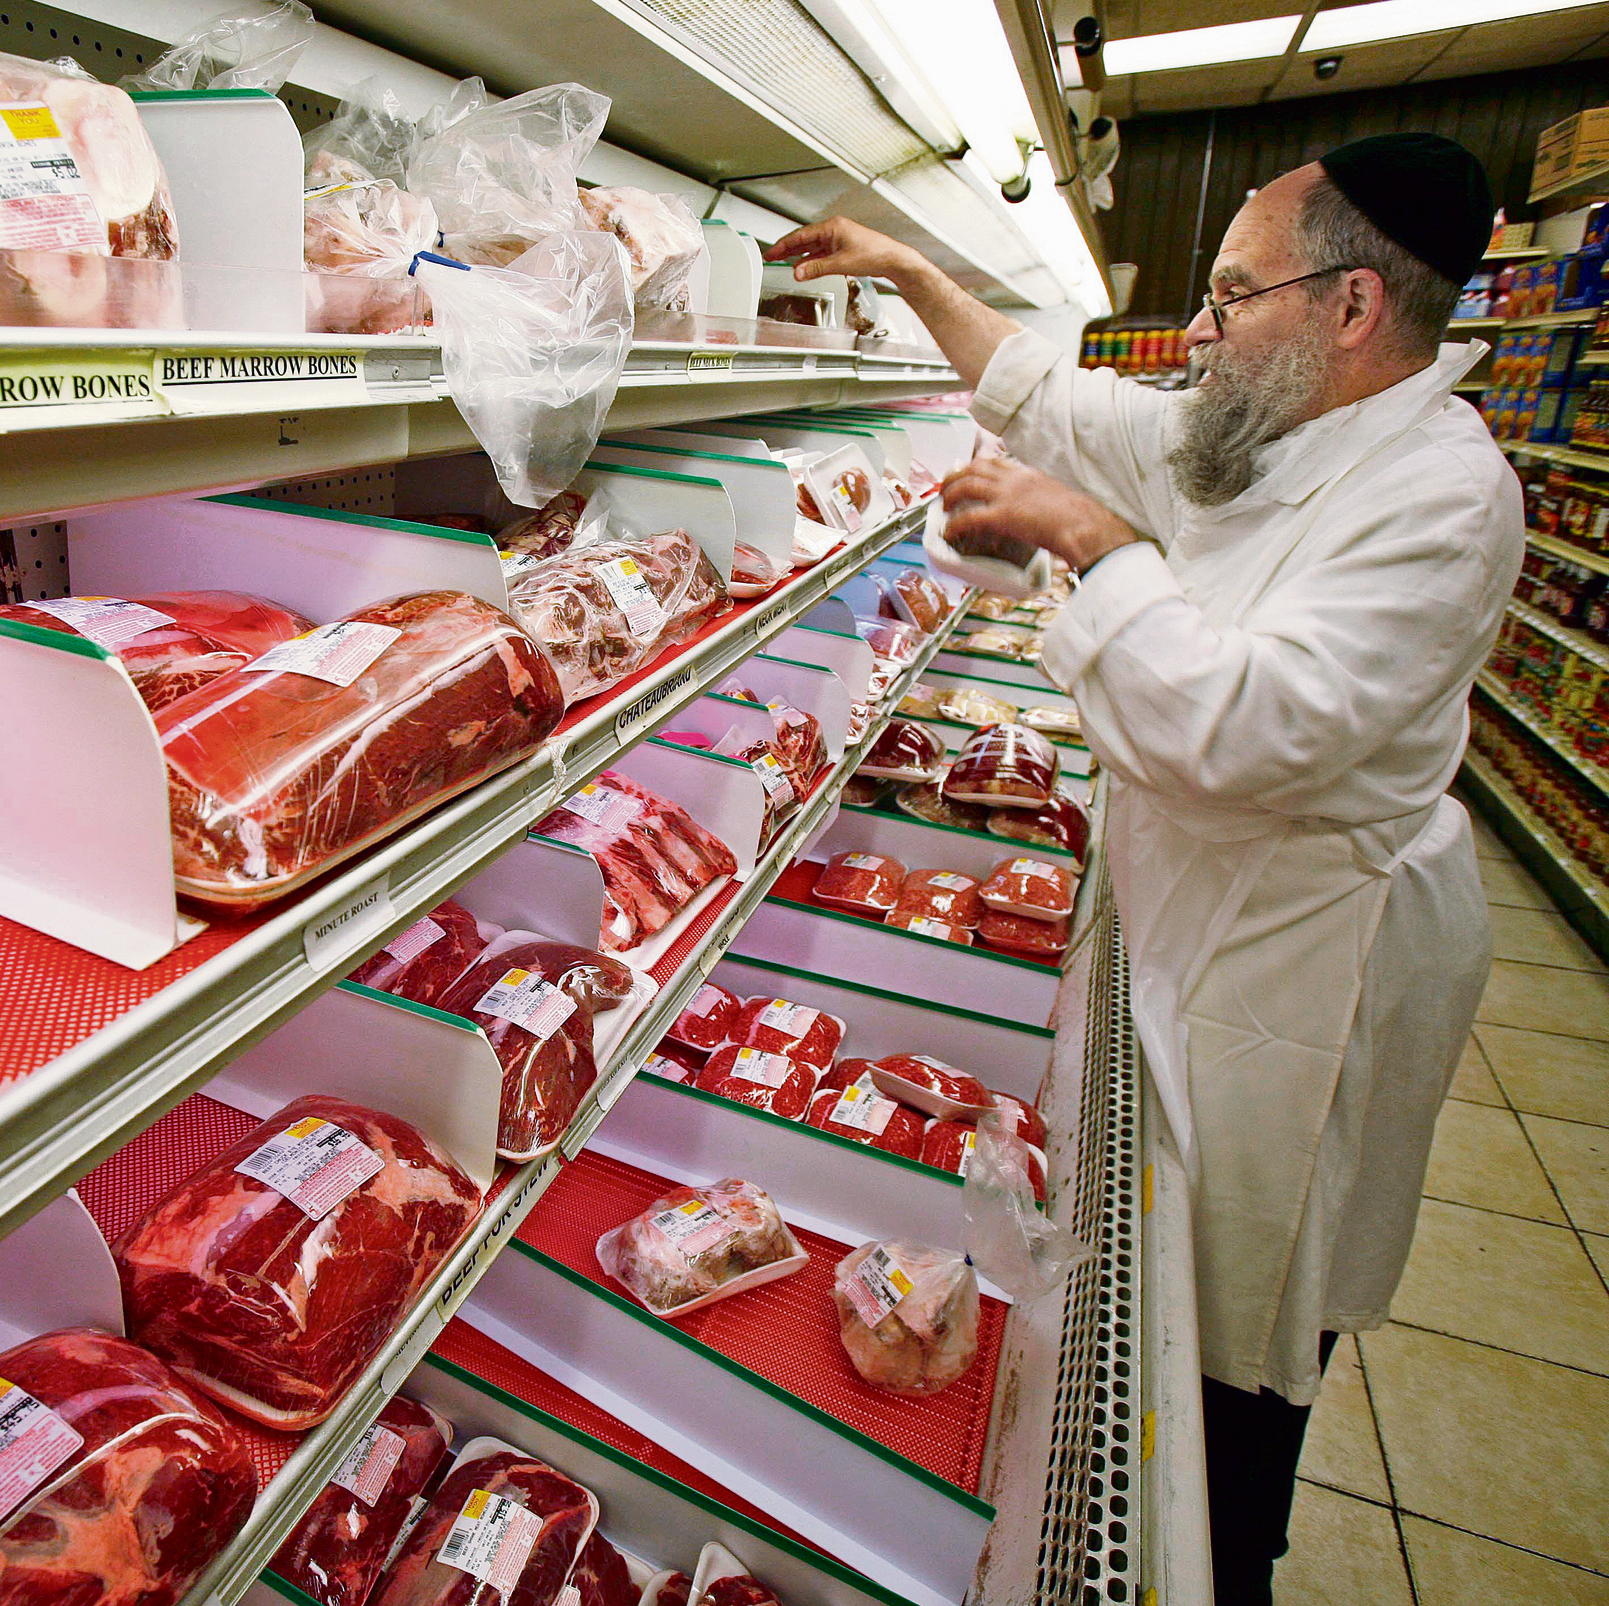 ÐÐ°ÑÑÐ¸Ð½ÐºÐ¸ Ð¿Ð¾ Ð·Ð°Ð¿ÑÐ¾ÑÑ Belgium French-speaking region stuns religious minorities with ban on kosher and halal meat